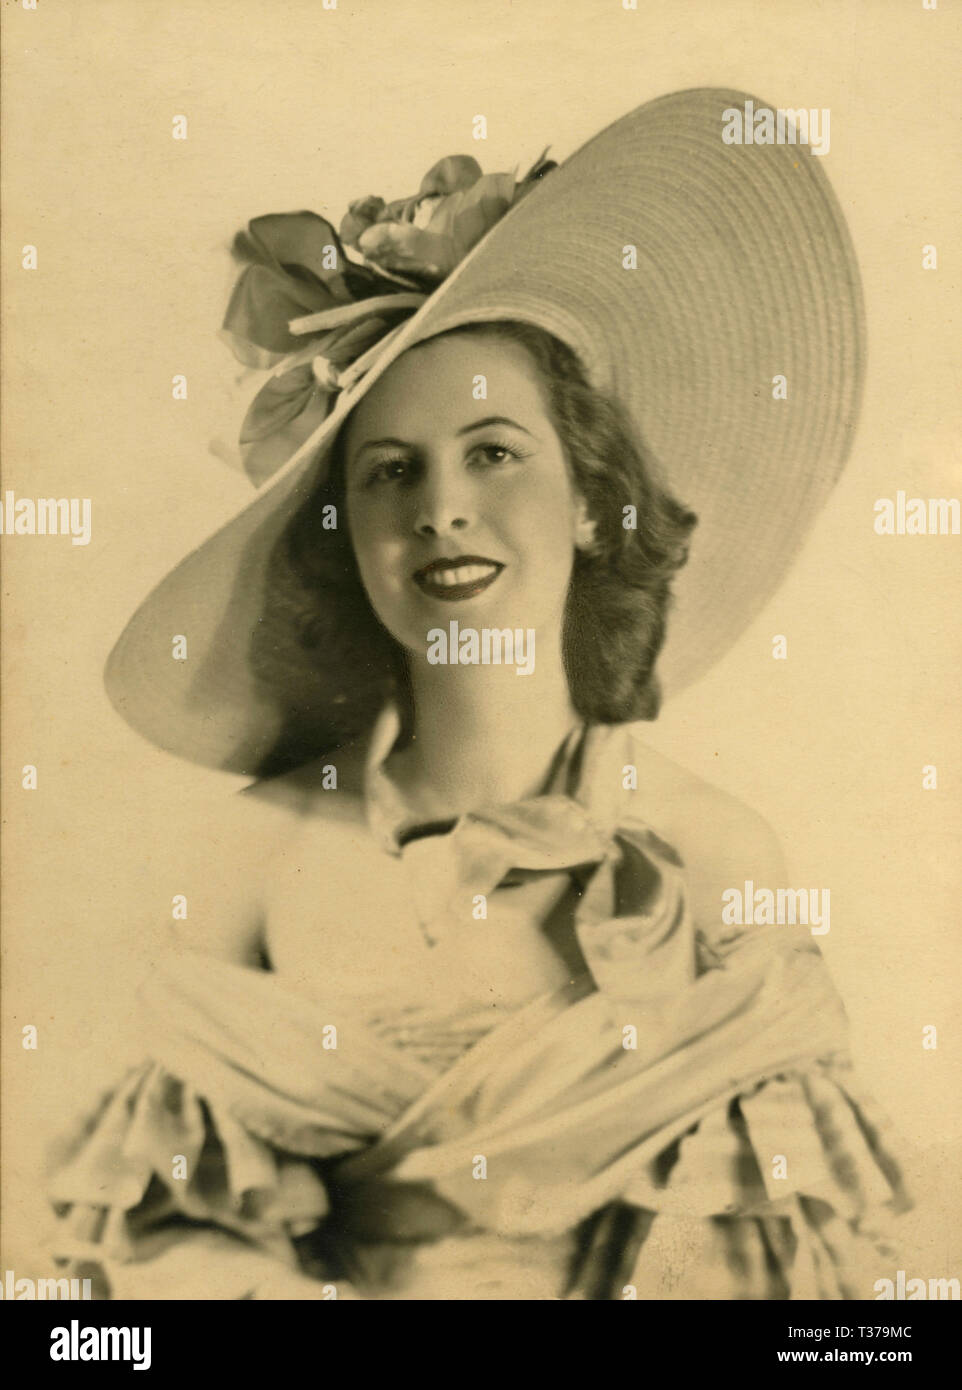 Retrato de la actriz Ruby Dalma con gran sombrero, Italia 1940 Foto de stock